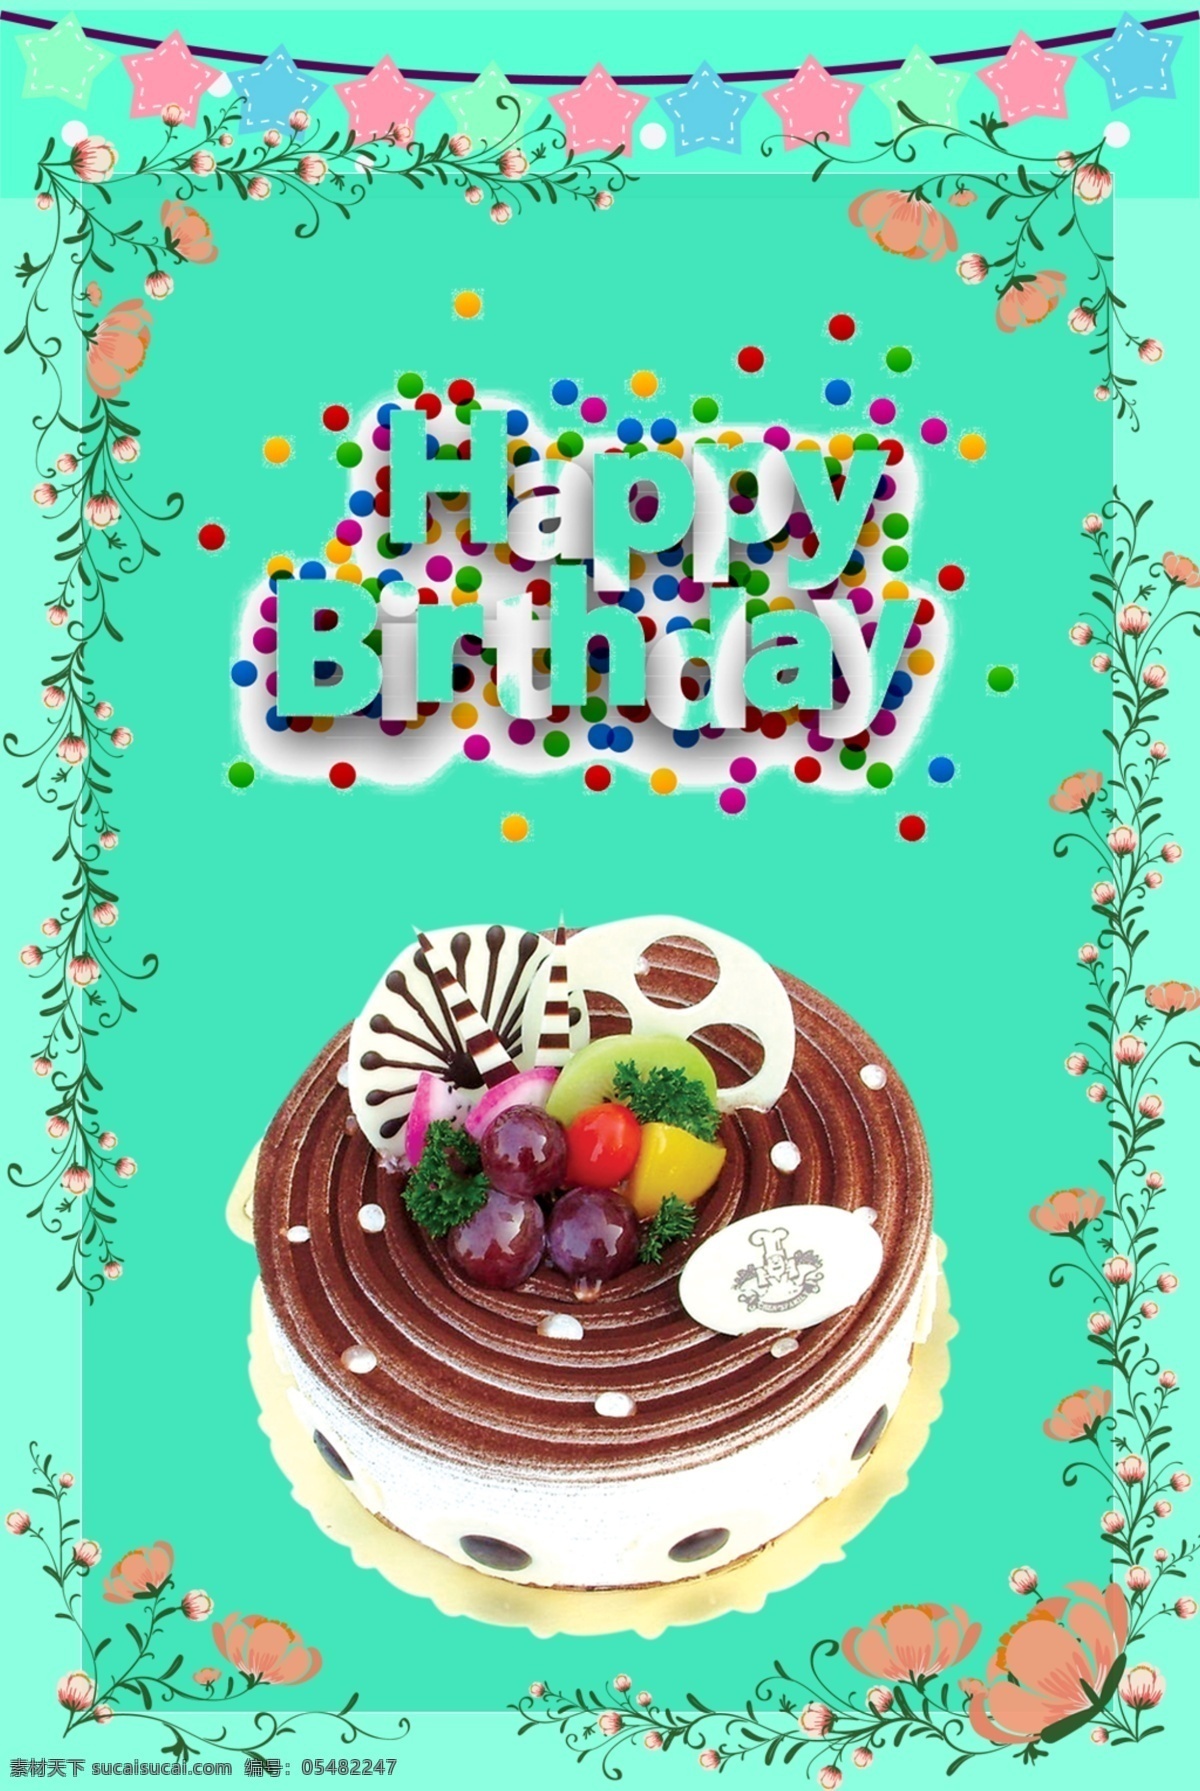 生日 巧克力 蛋糕 蓝色 藤 花 背景 宣传海报 happybirthday 巧克力蛋糕 快乐 海报 模板 水果 藤花 星星